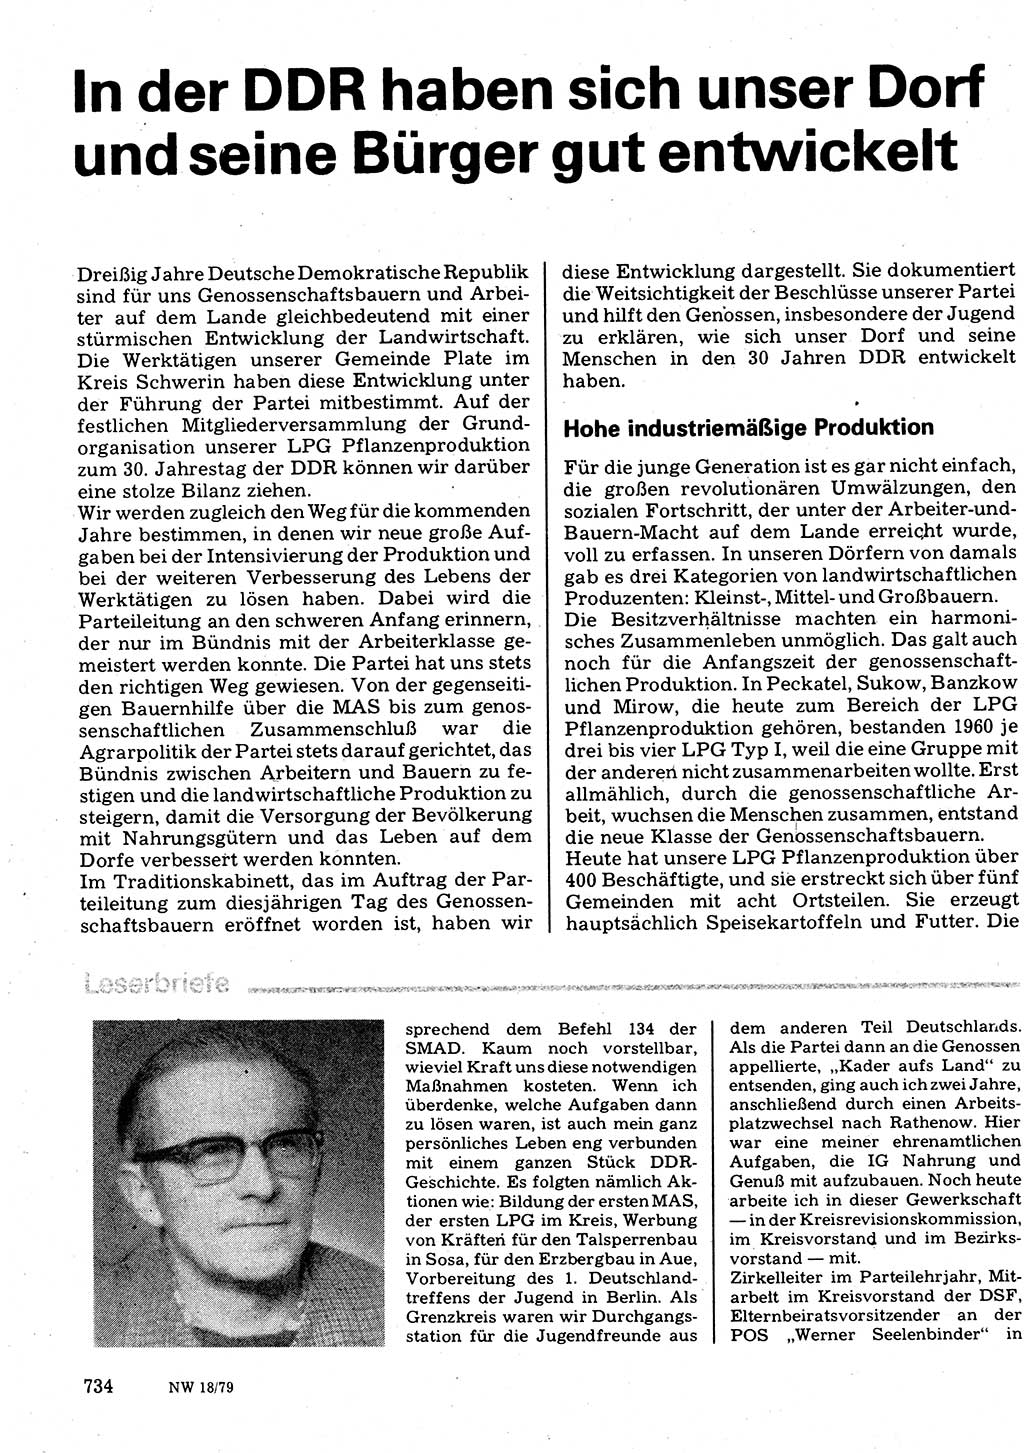 Neuer Weg (NW), Organ des Zentralkomitees (ZK) der SED (Sozialistische Einheitspartei Deutschlands) für Fragen des Parteilebens, 34. Jahrgang [Deutsche Demokratische Republik (DDR)] 1979, Seite 734 (NW ZK SED DDR 1979, S. 734)